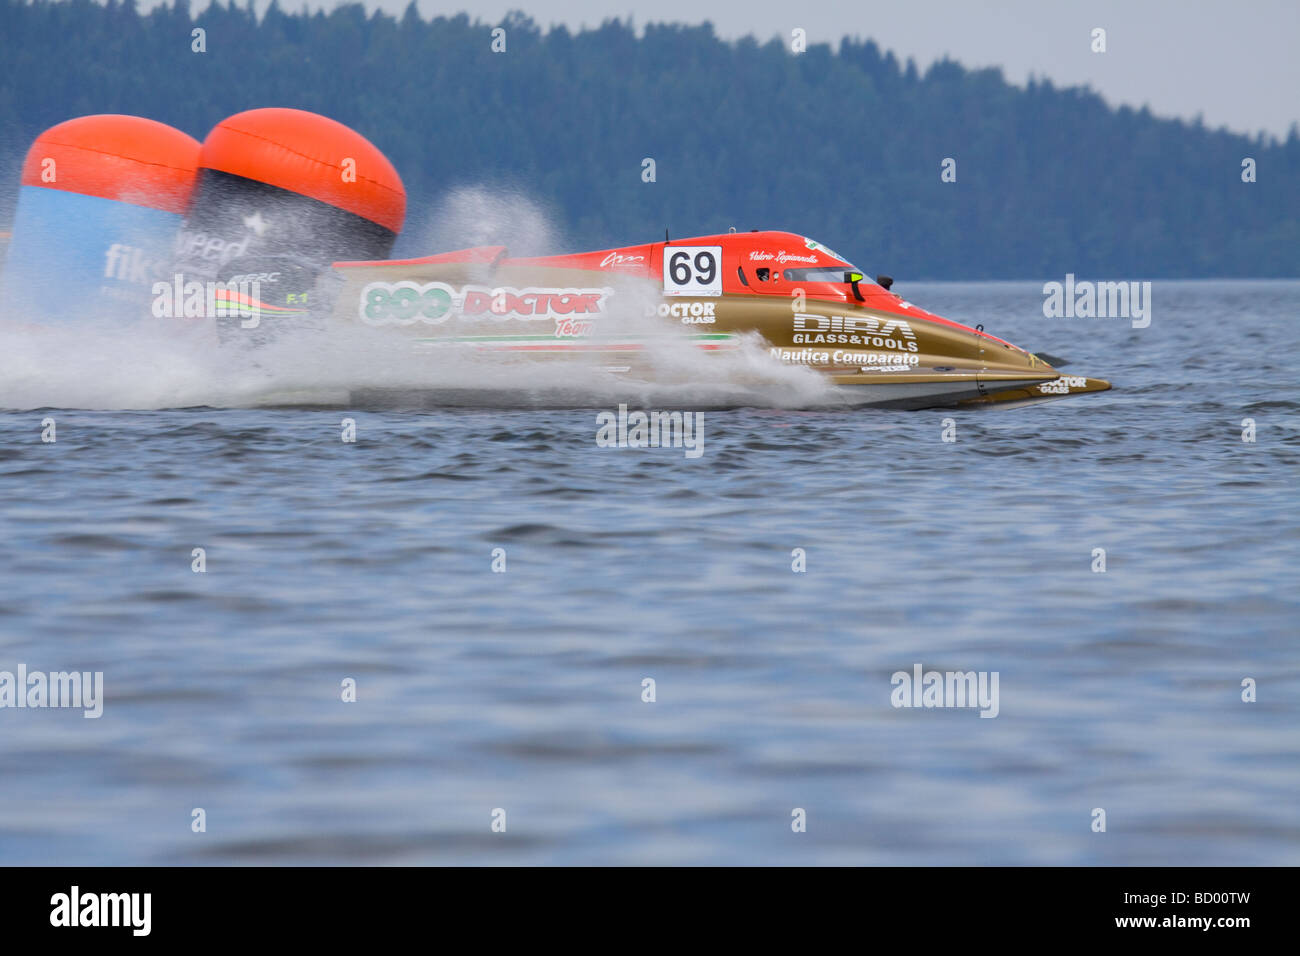 Da F1 Powerboat nel Campionato del Mondo a Lahti Finlandia 12-13 giugno 2009. Autista Valerio Lagiannella imbarcazione 69 Foto Stock